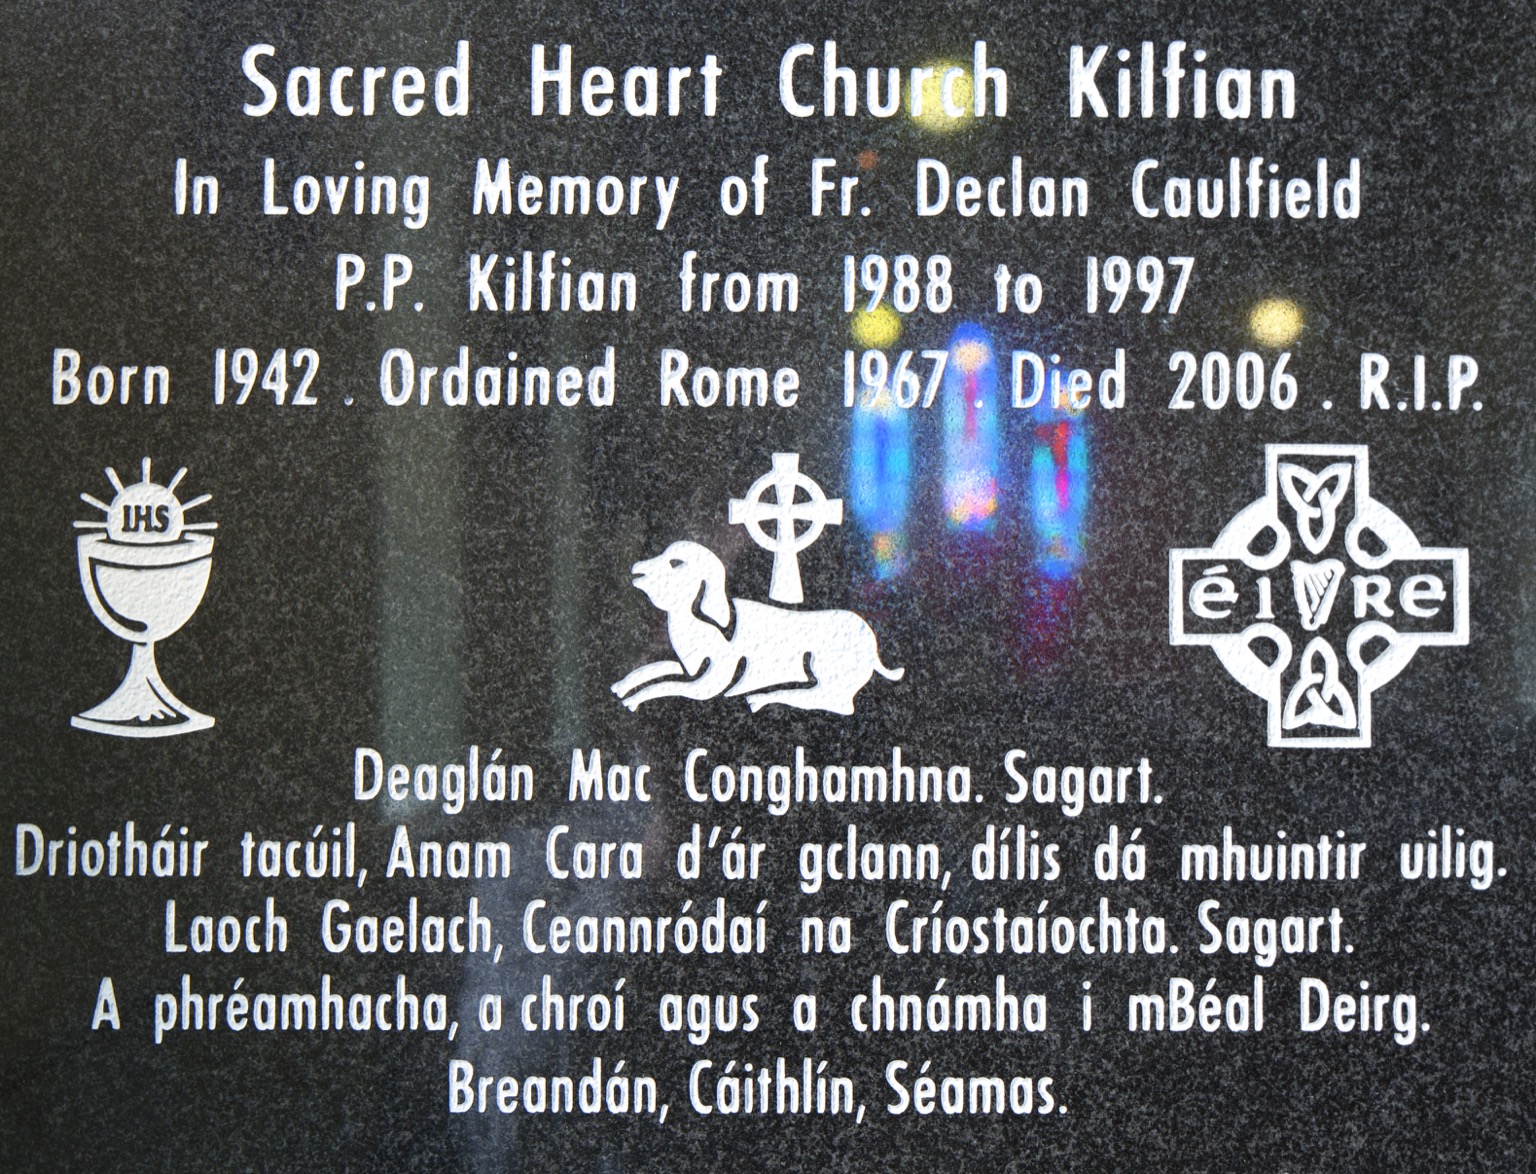 Kilfian Church-05